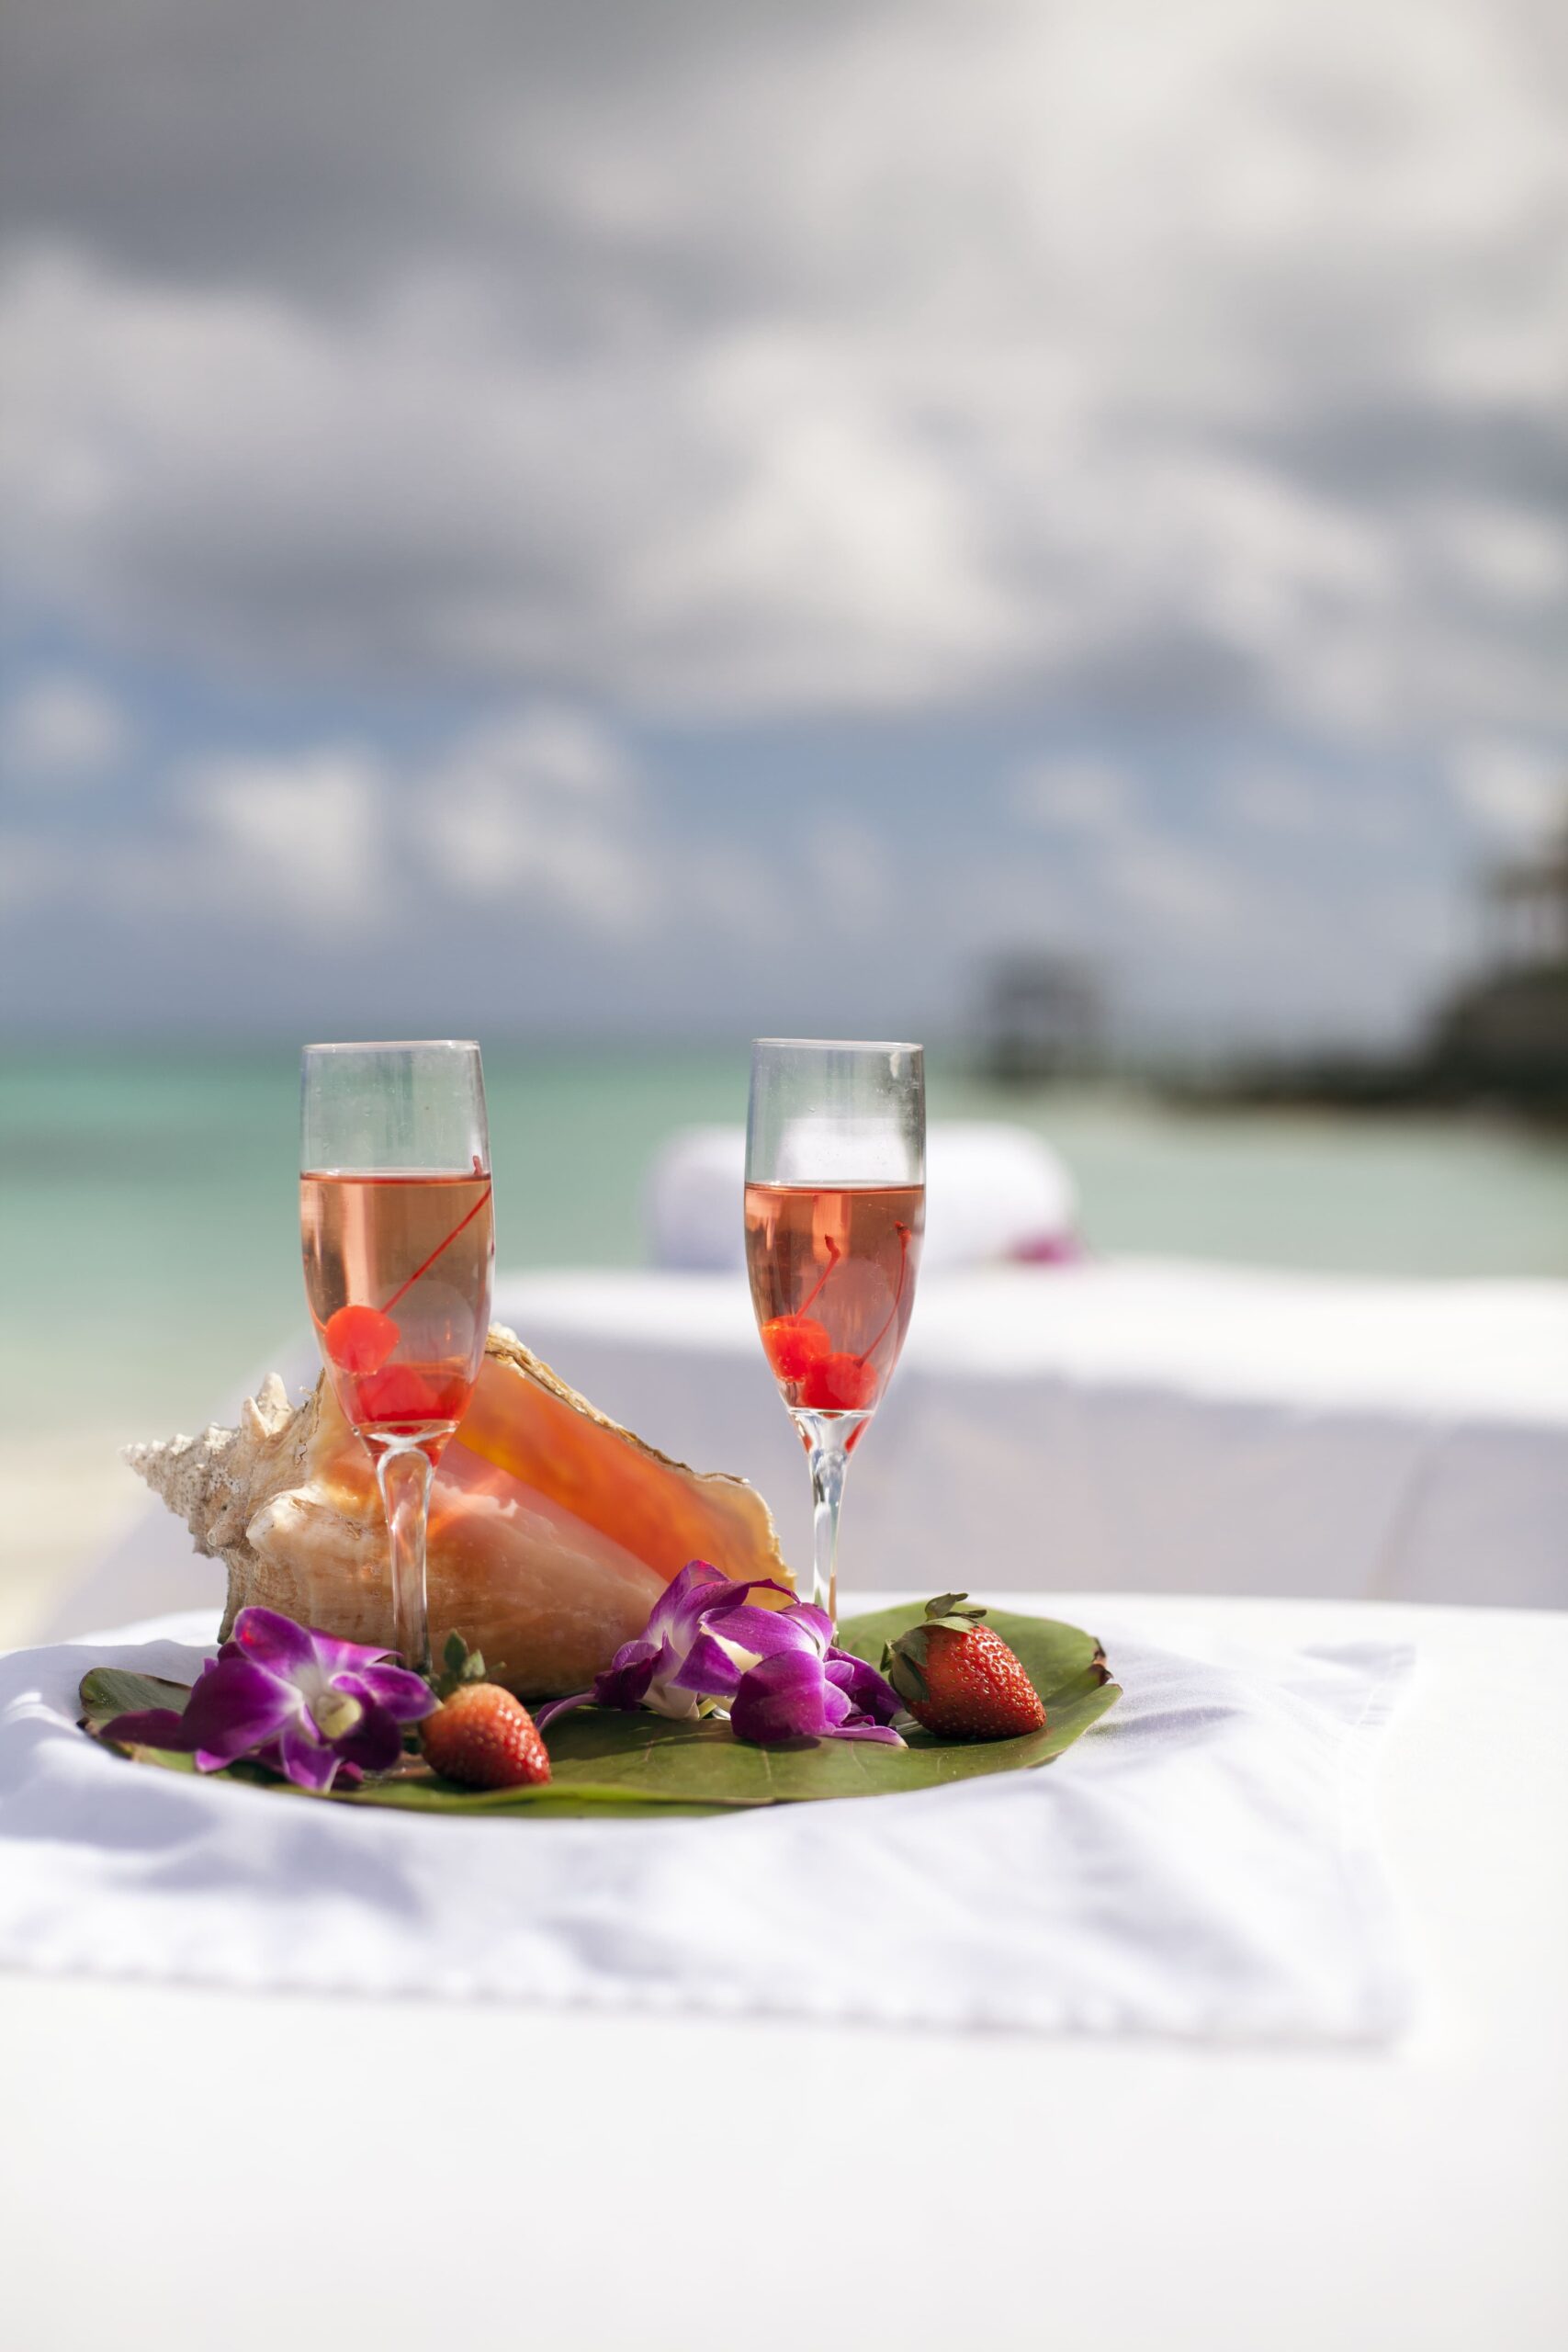 Foto cortesía del Ministerio de Turismo, Inversiones y Aviación de Las Bahamas. Tips para recrear los sabores de Las Bahamas